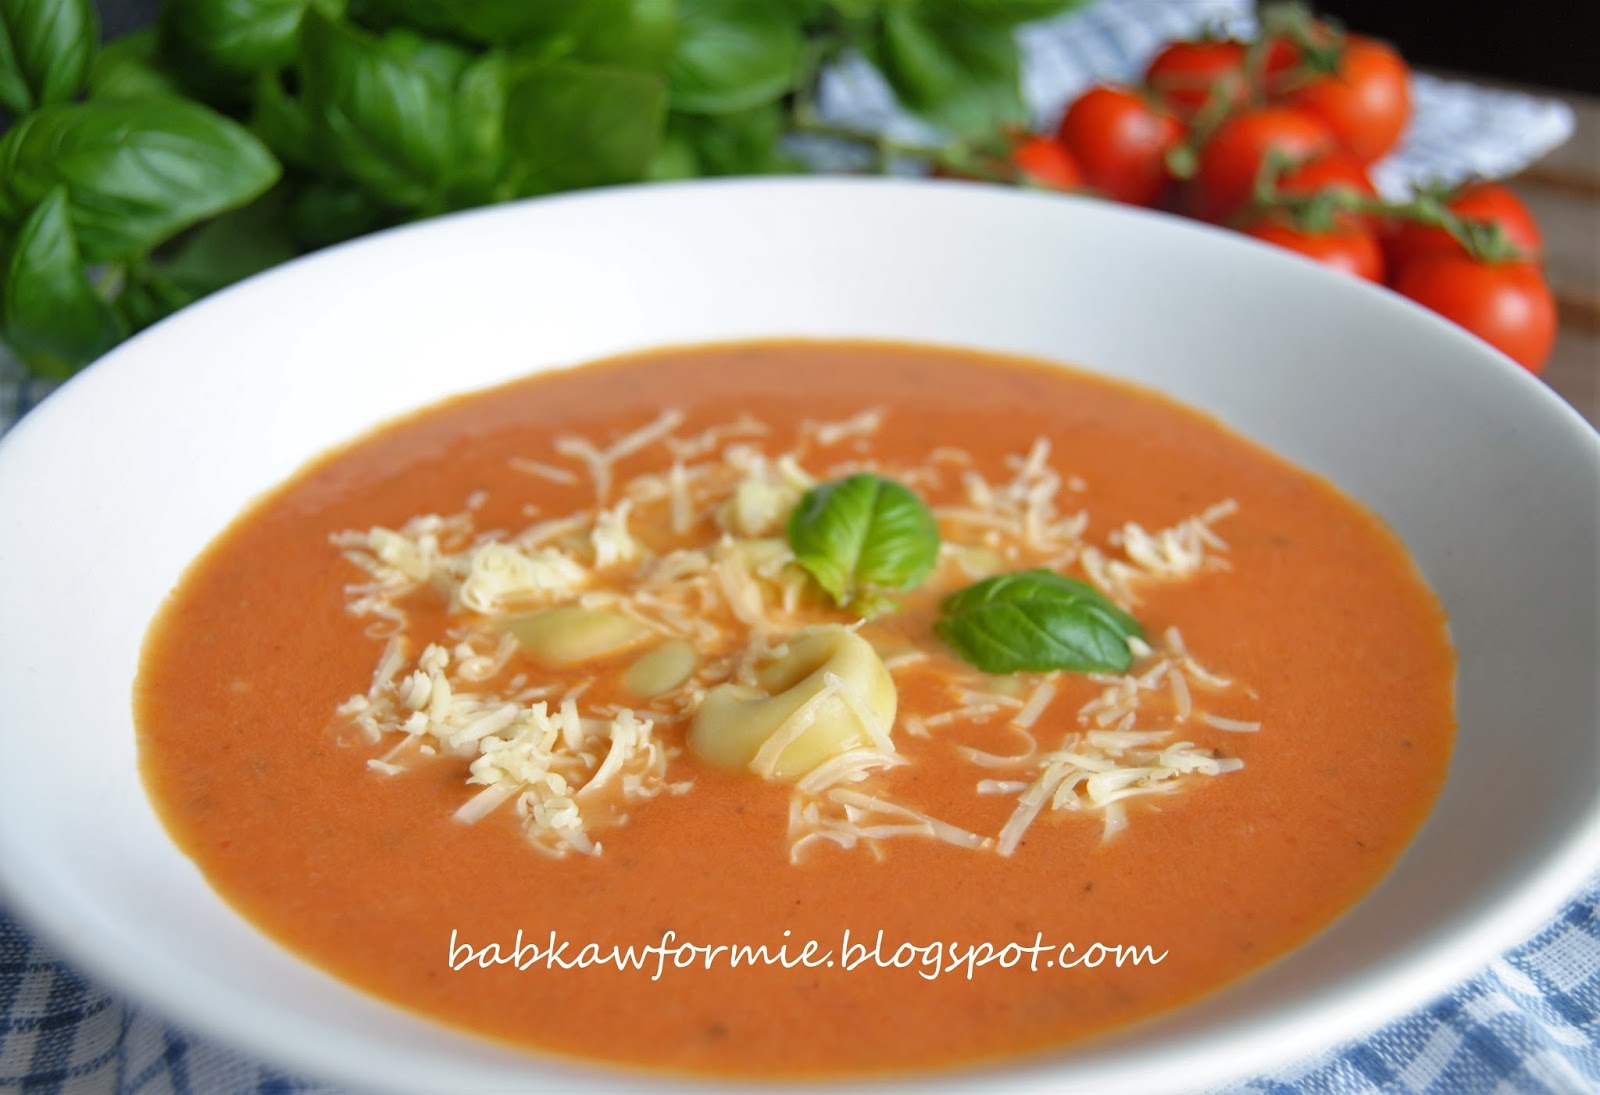 zupa krem z pieczonych pomidorów babkawformie.blogspot.com